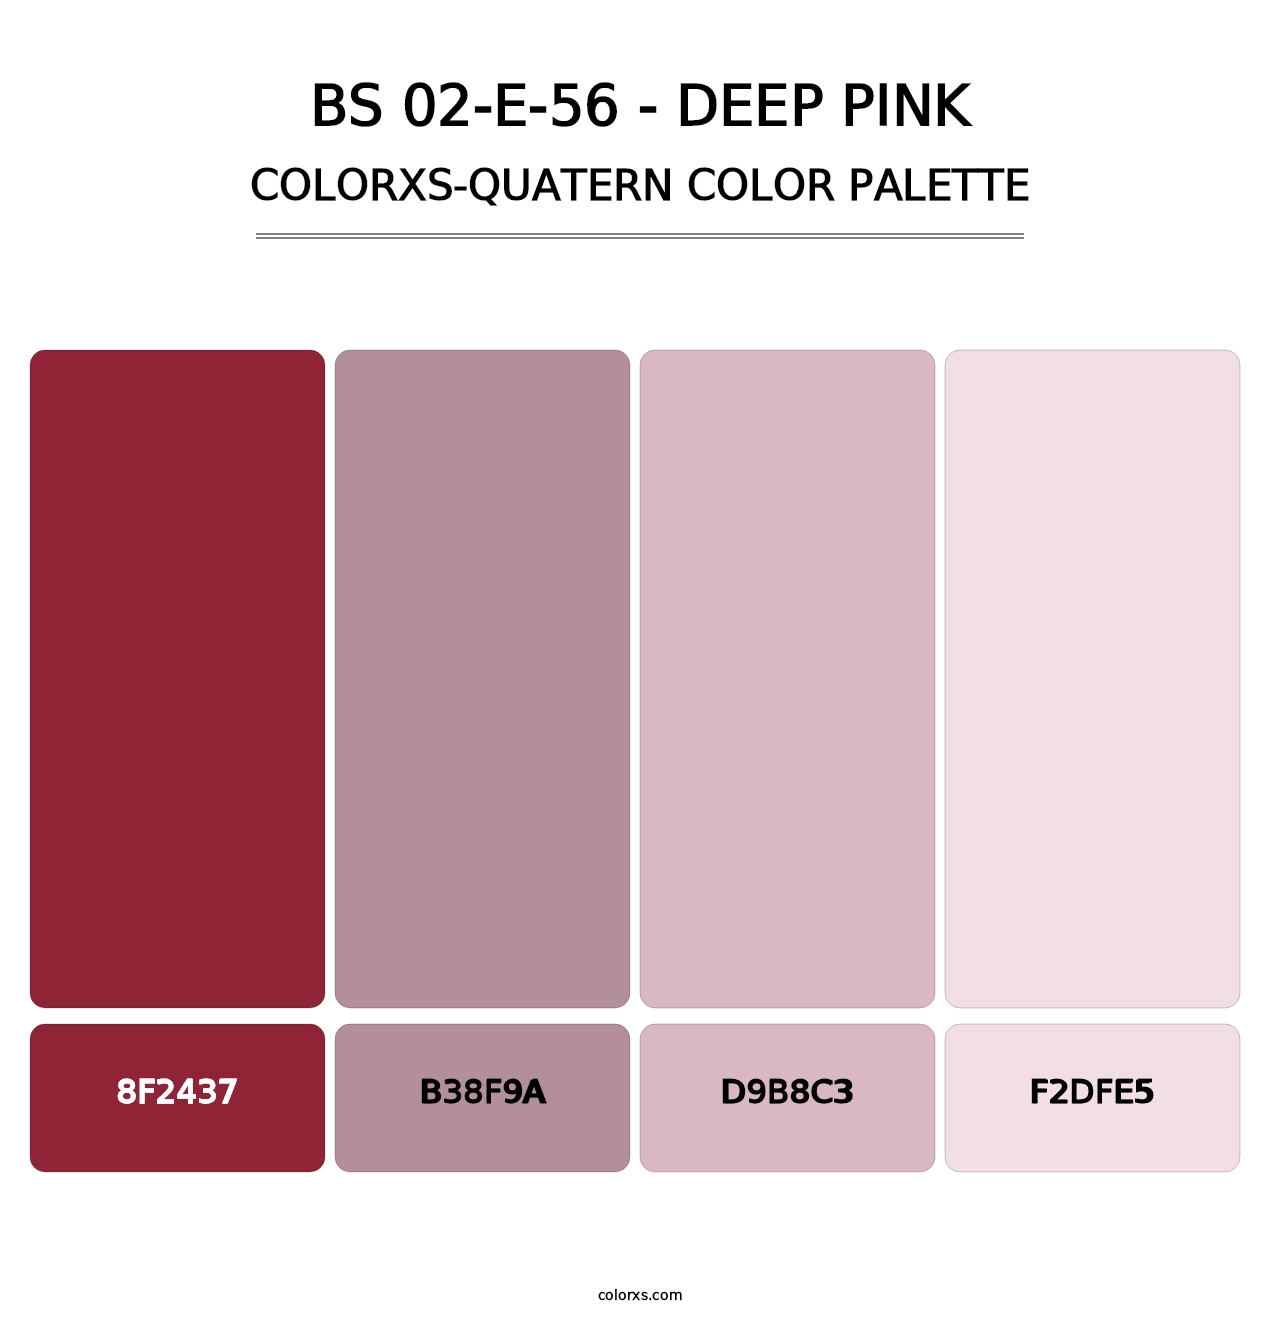 BS 02-E-56 - Deep Pink - Colorxs Quatern Palette